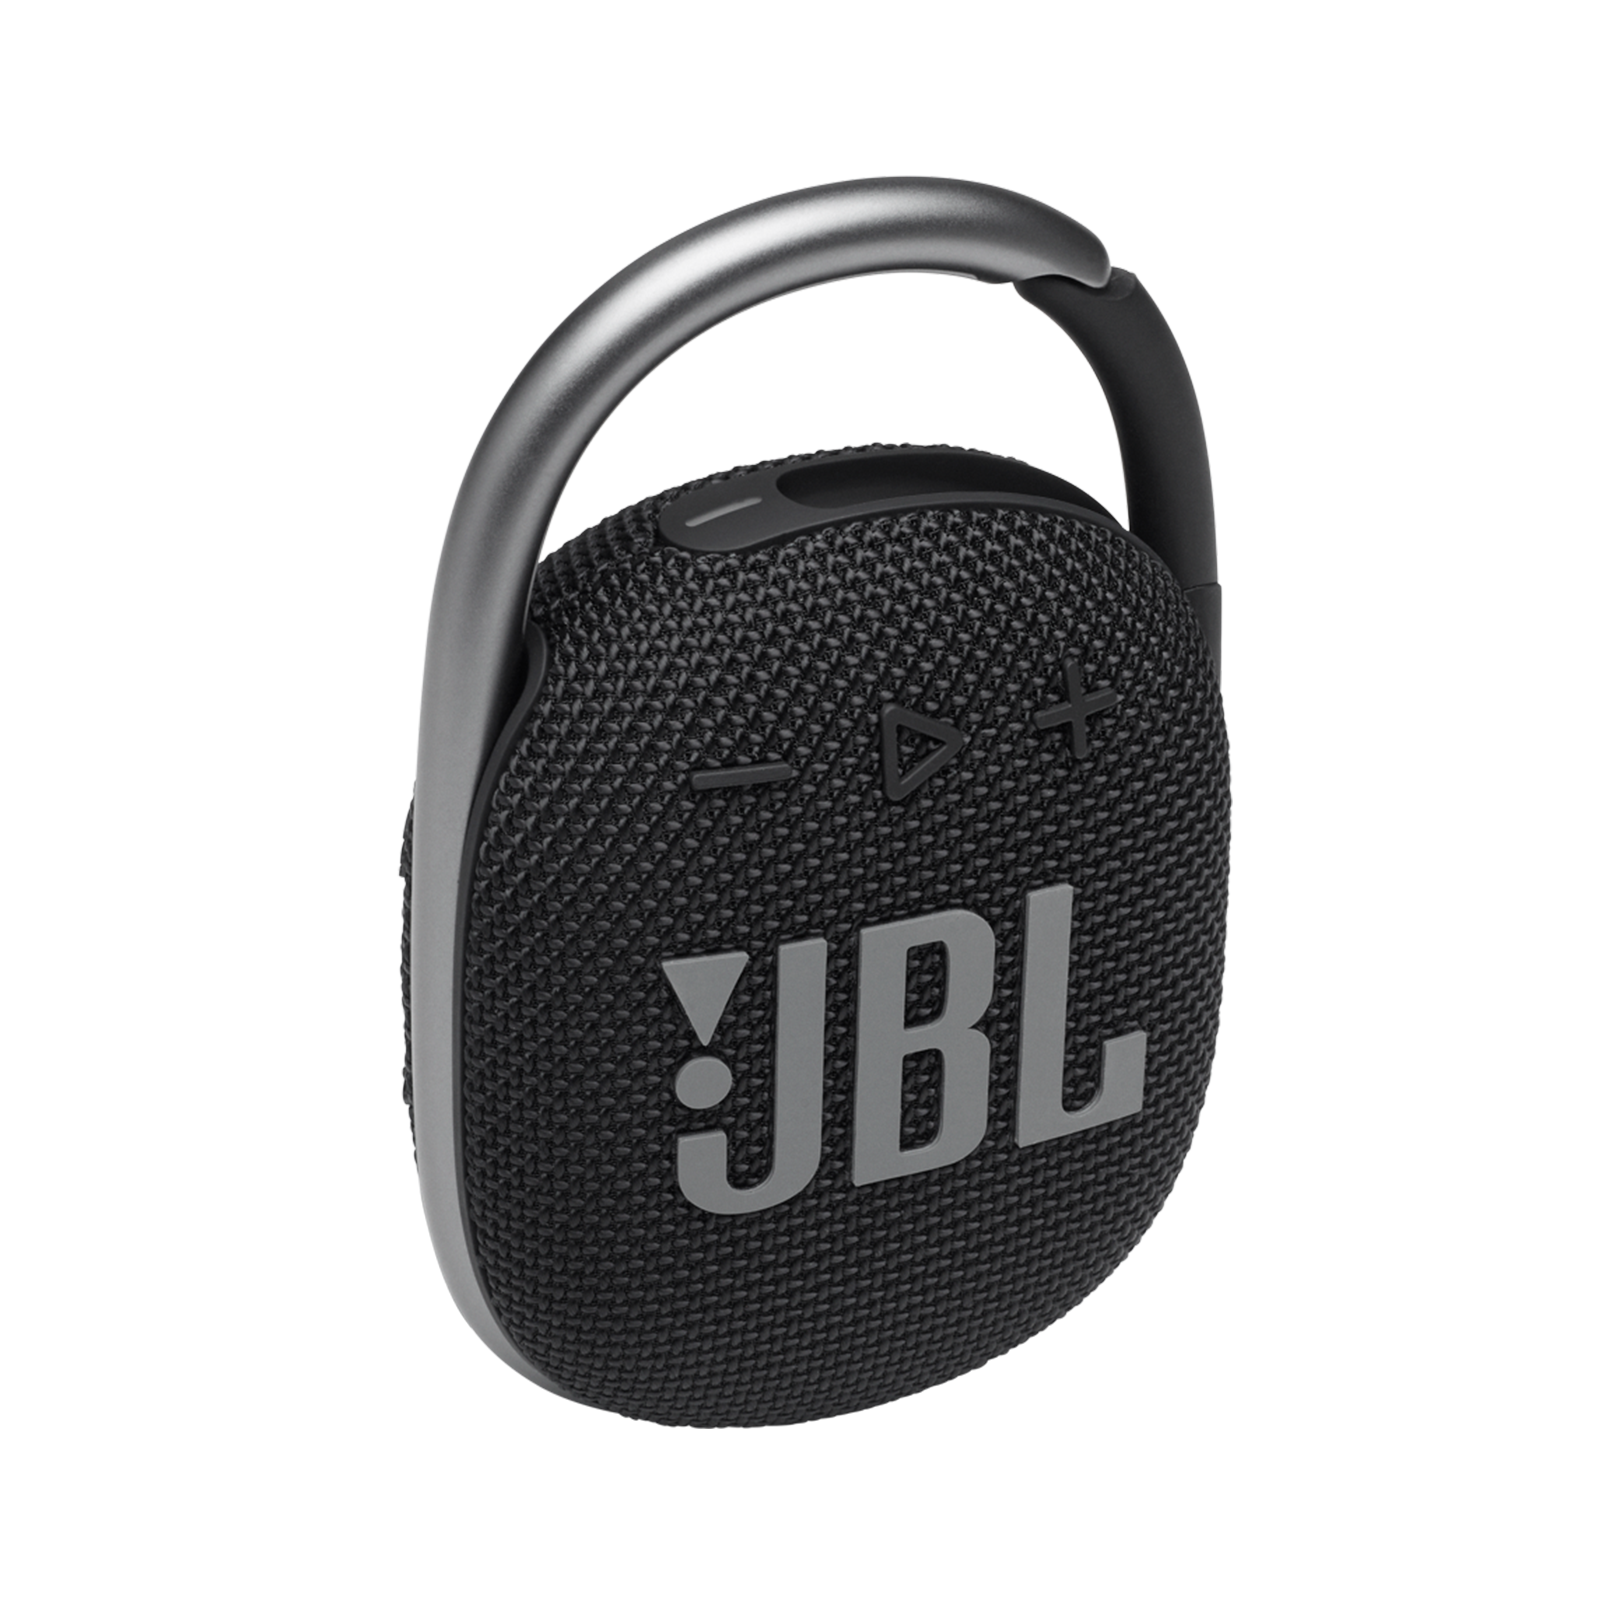 【新品】JBL CLIP 4 クリップ Bluetoothスピーカー